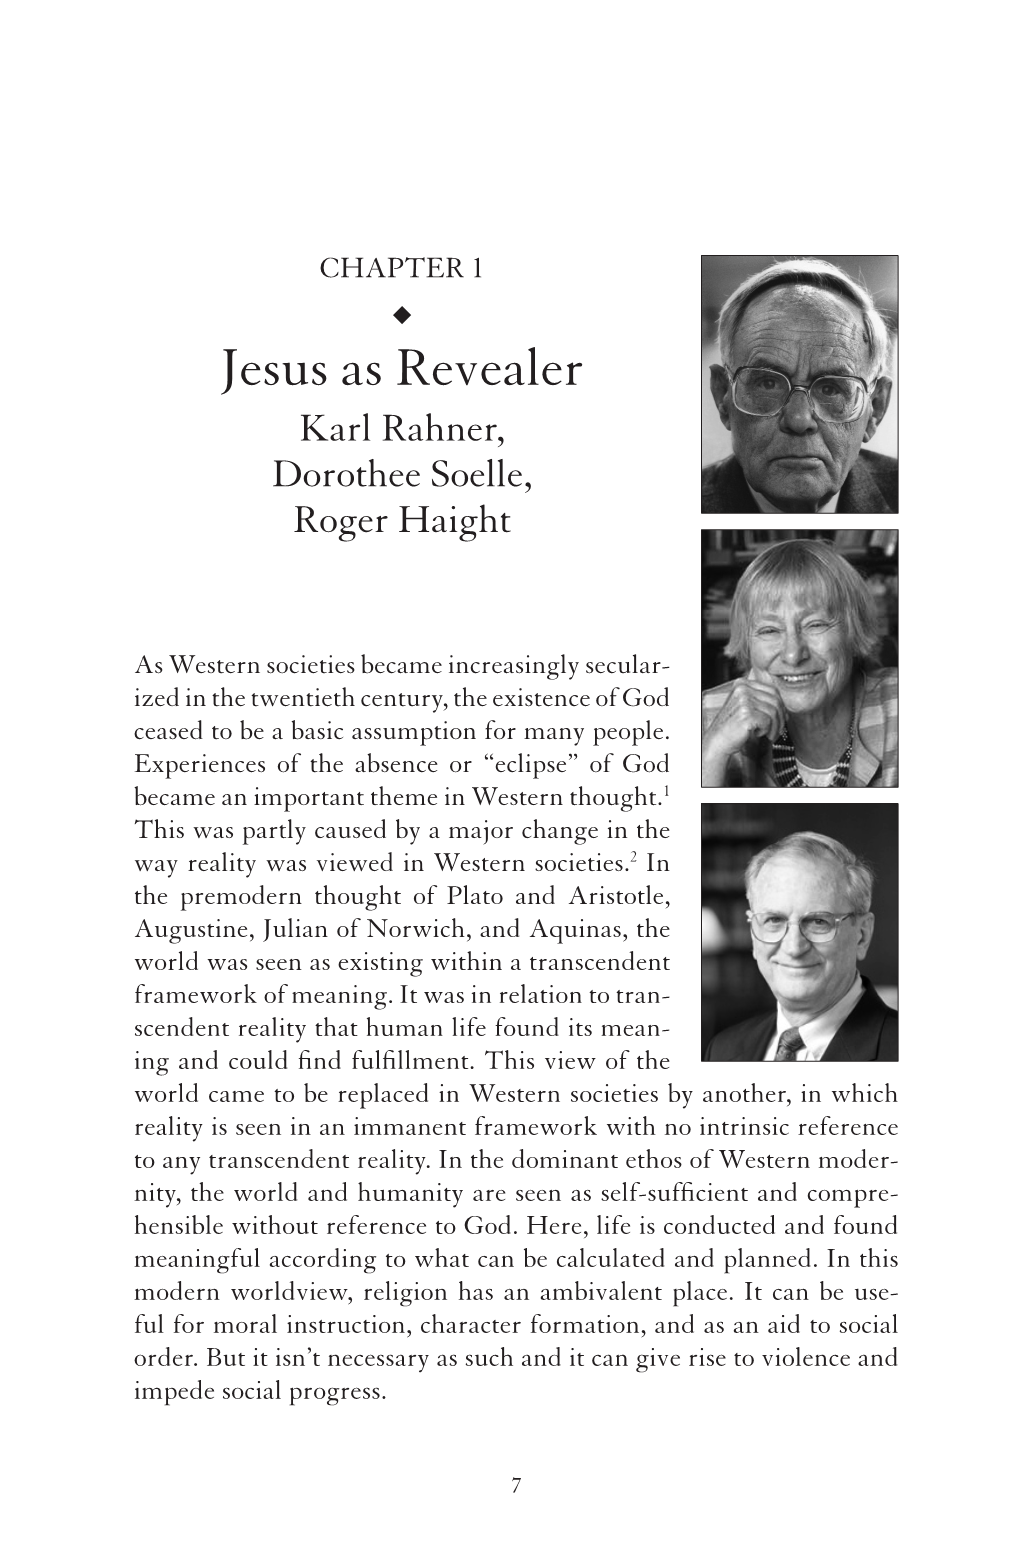 Jesus As Revealer Karl Rahner, Dorothee Soelle, Roger Haight